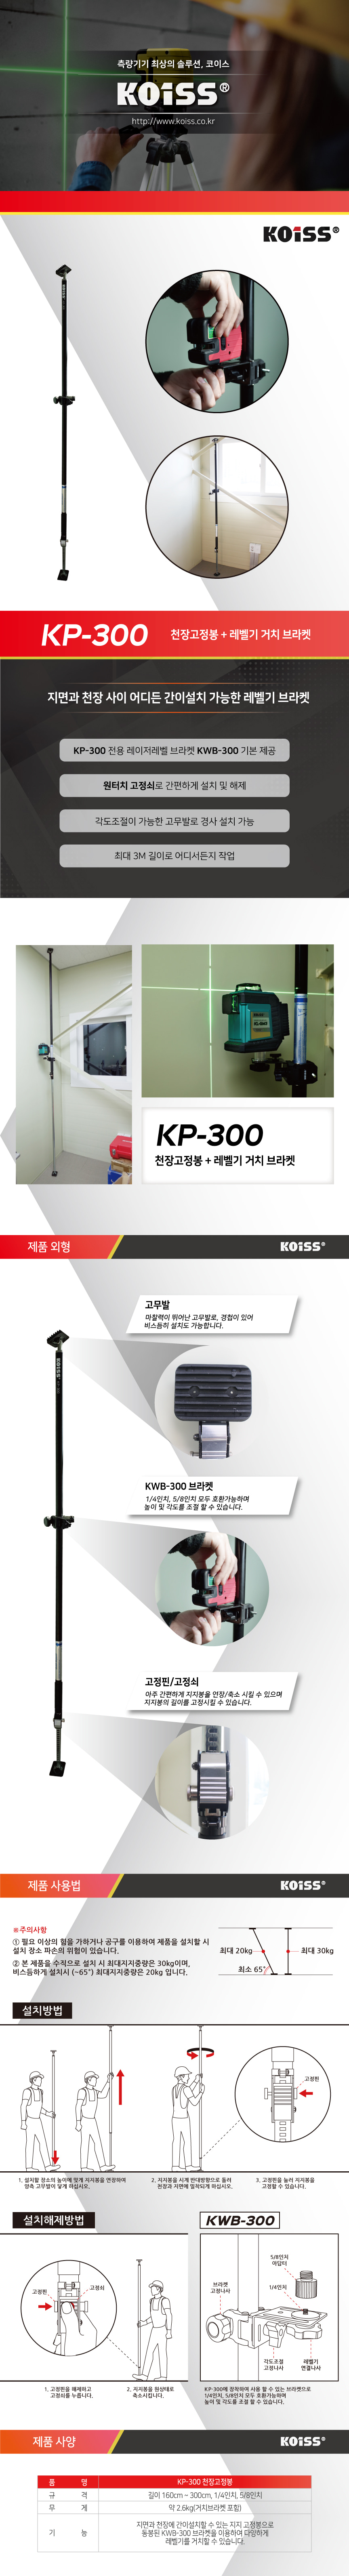 KP-300-상세페이지-리뉴얼_웅작업_30kg-수정.jpg